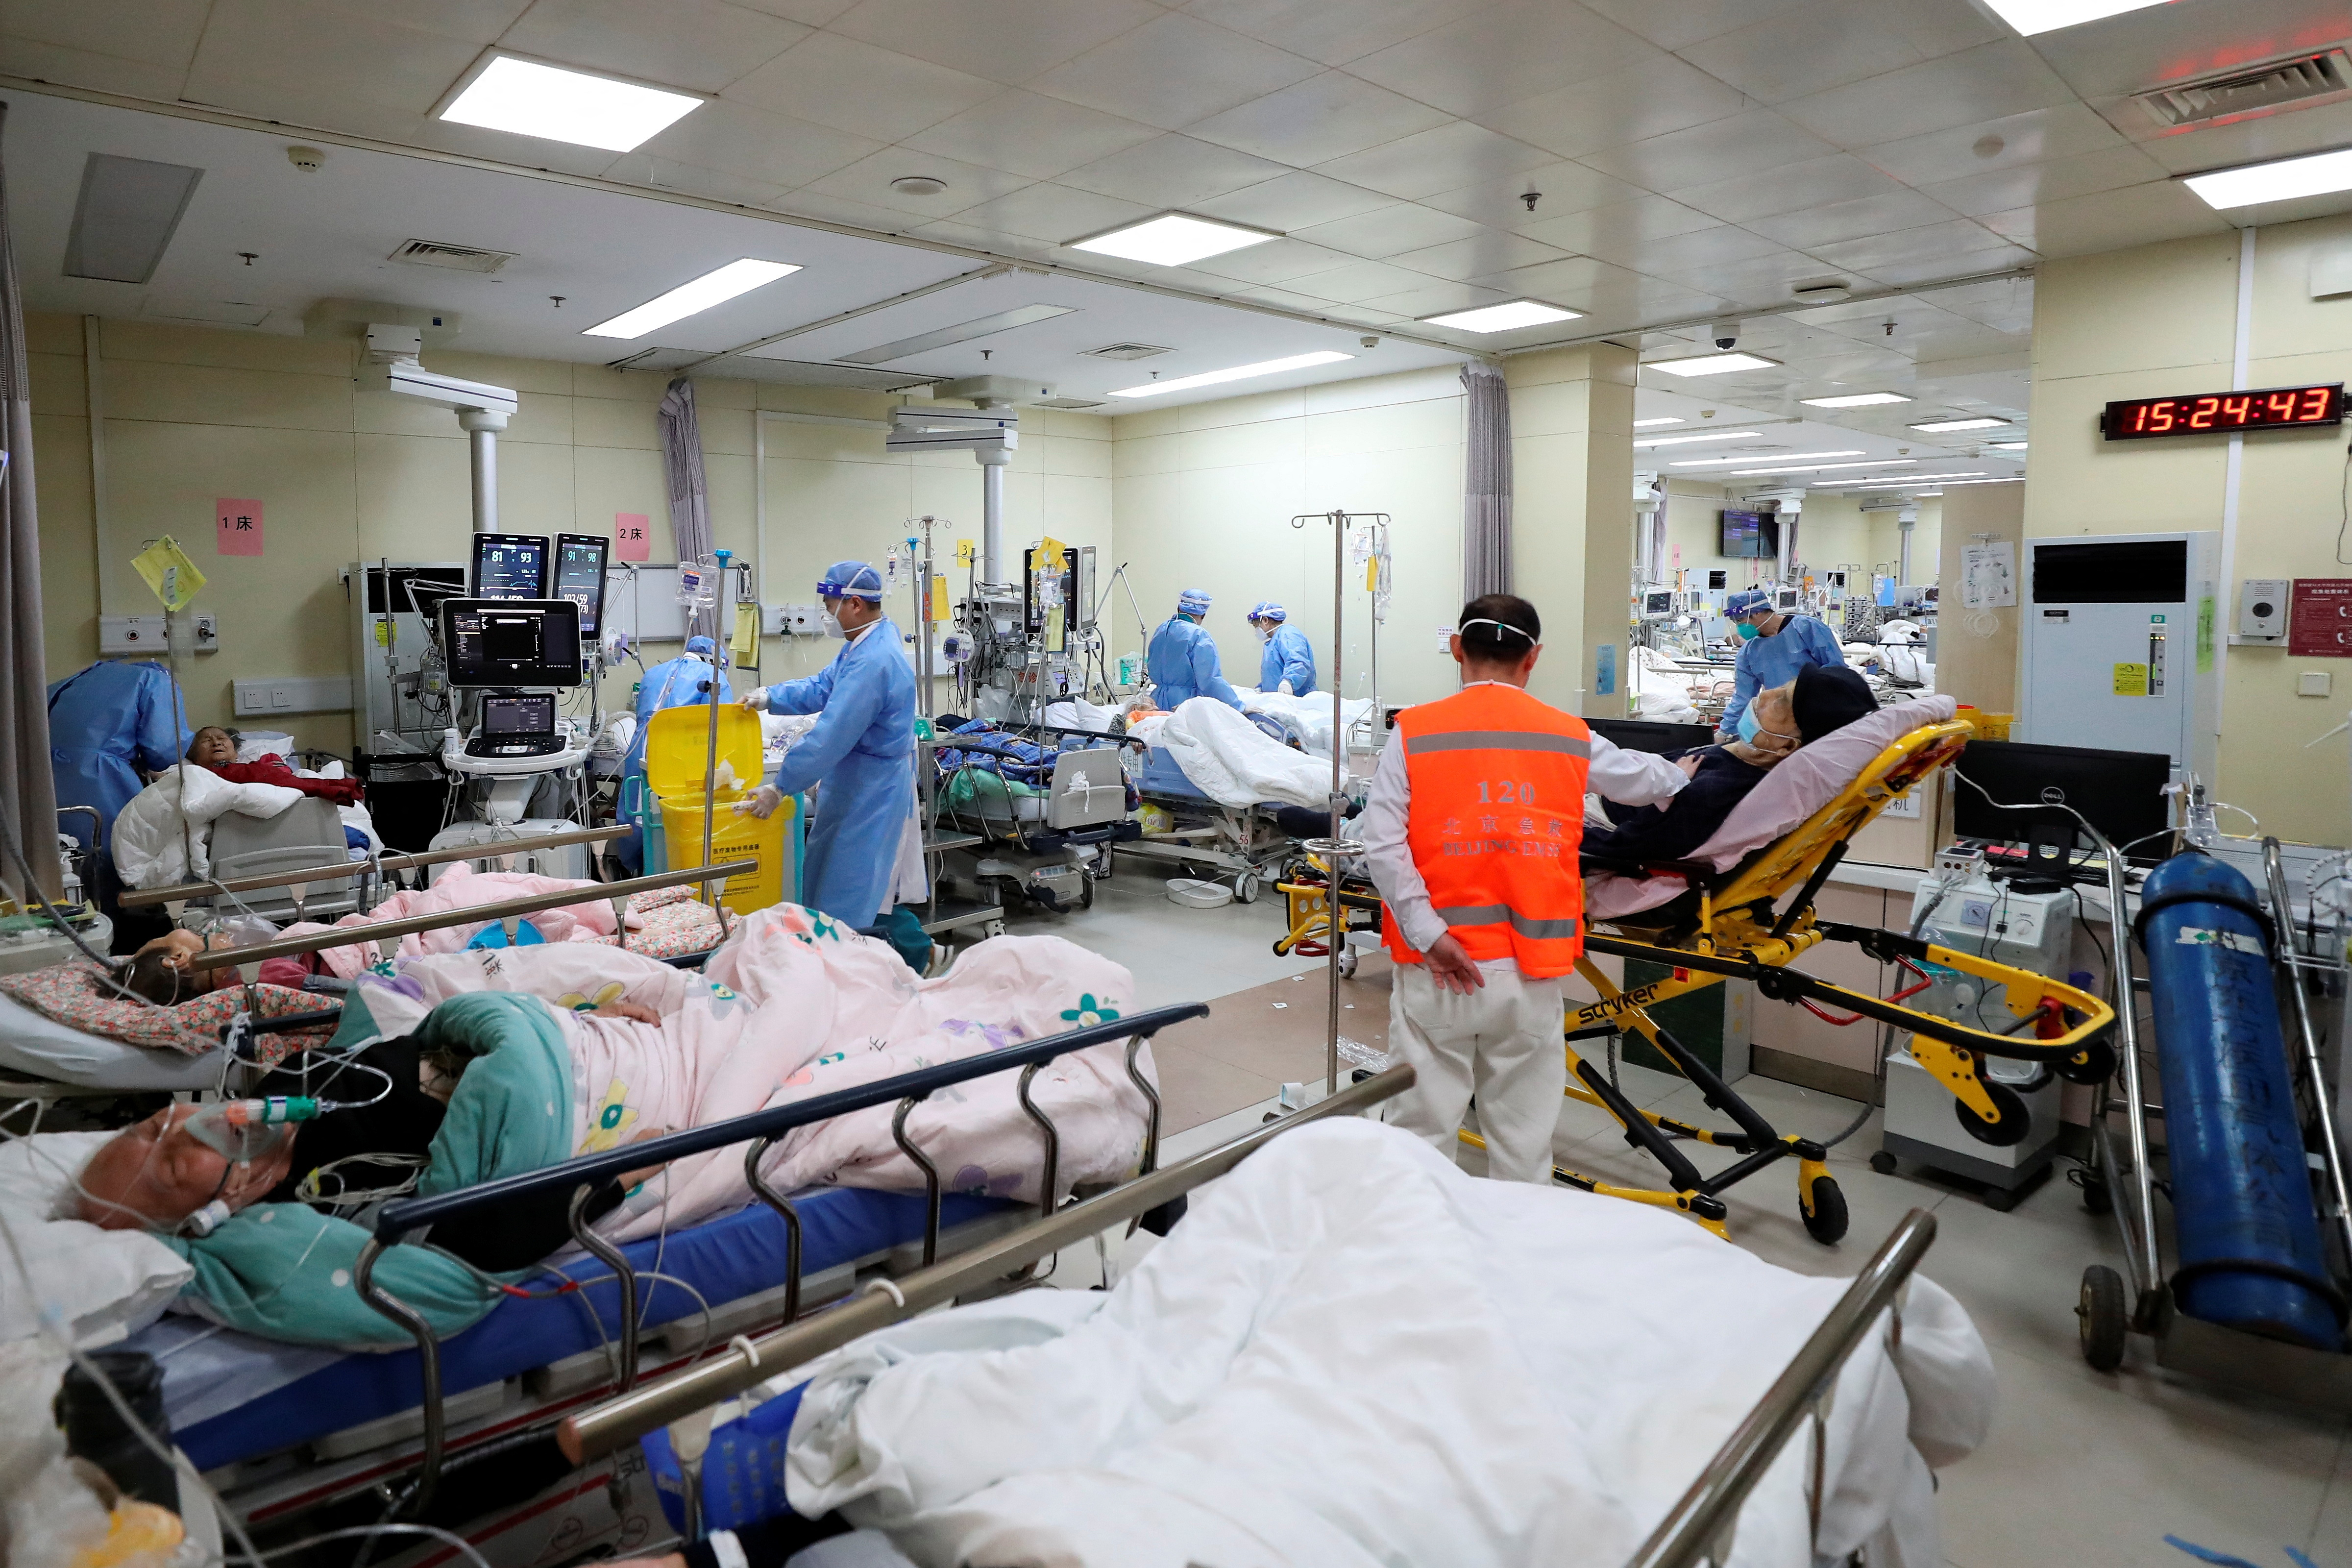 Trabajadores médicos atienden a pacientes en la unidad de cuidados intensivos del departamento de urgencias del hospital Beijing Chaoyang, durante el brote de COVID-19 en Beijing, China, este 27 de diciembre de 2022 (Reuters)